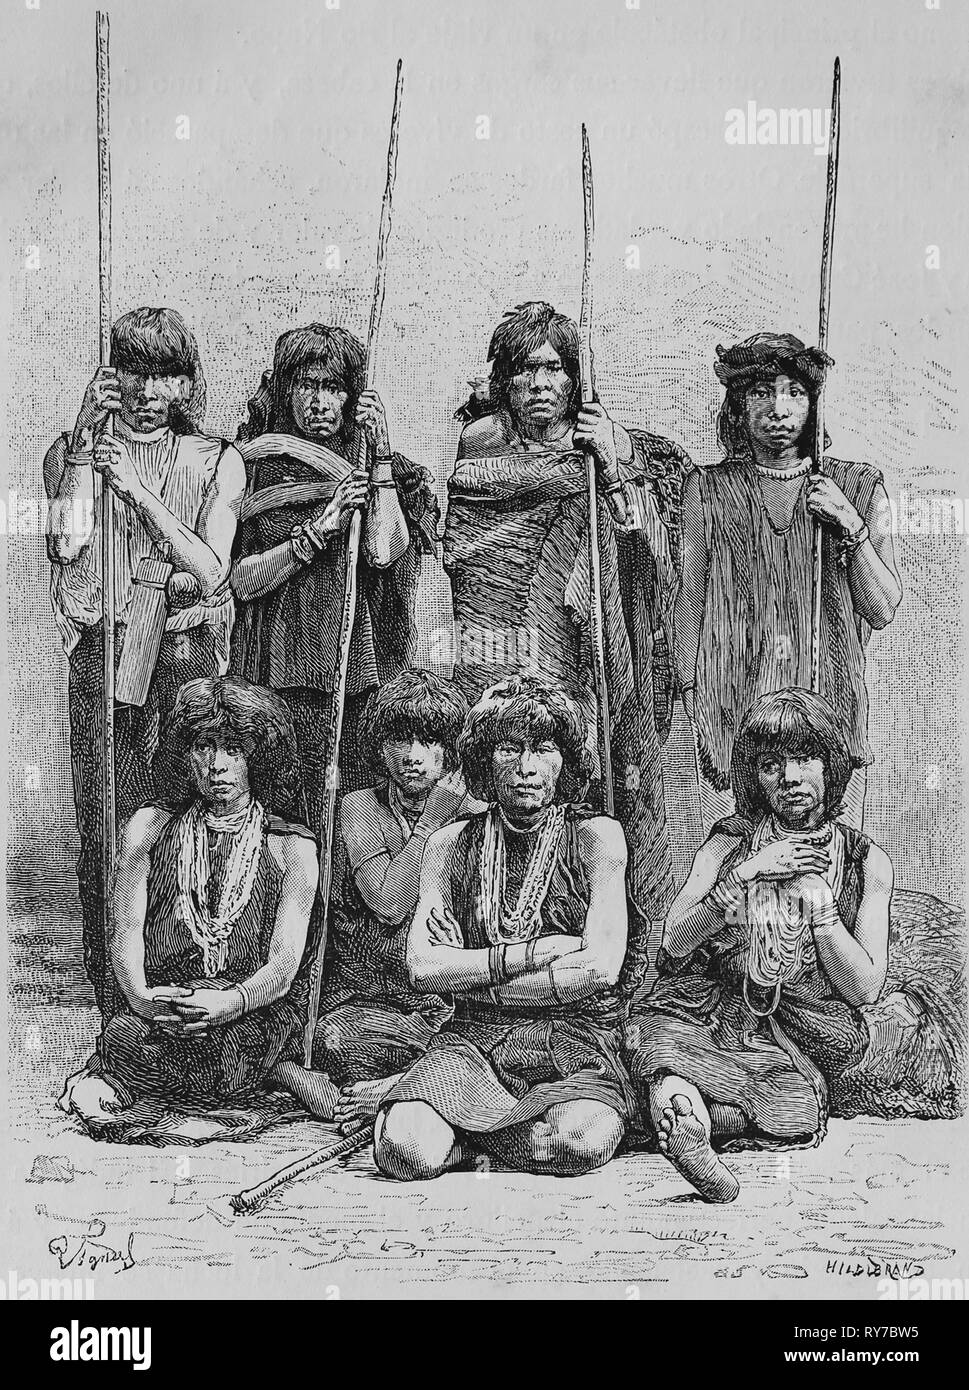 Equonoccial America. L'Équateur. Yumbo autochtones. Gravure, 19ème siècle. Banque D'Images